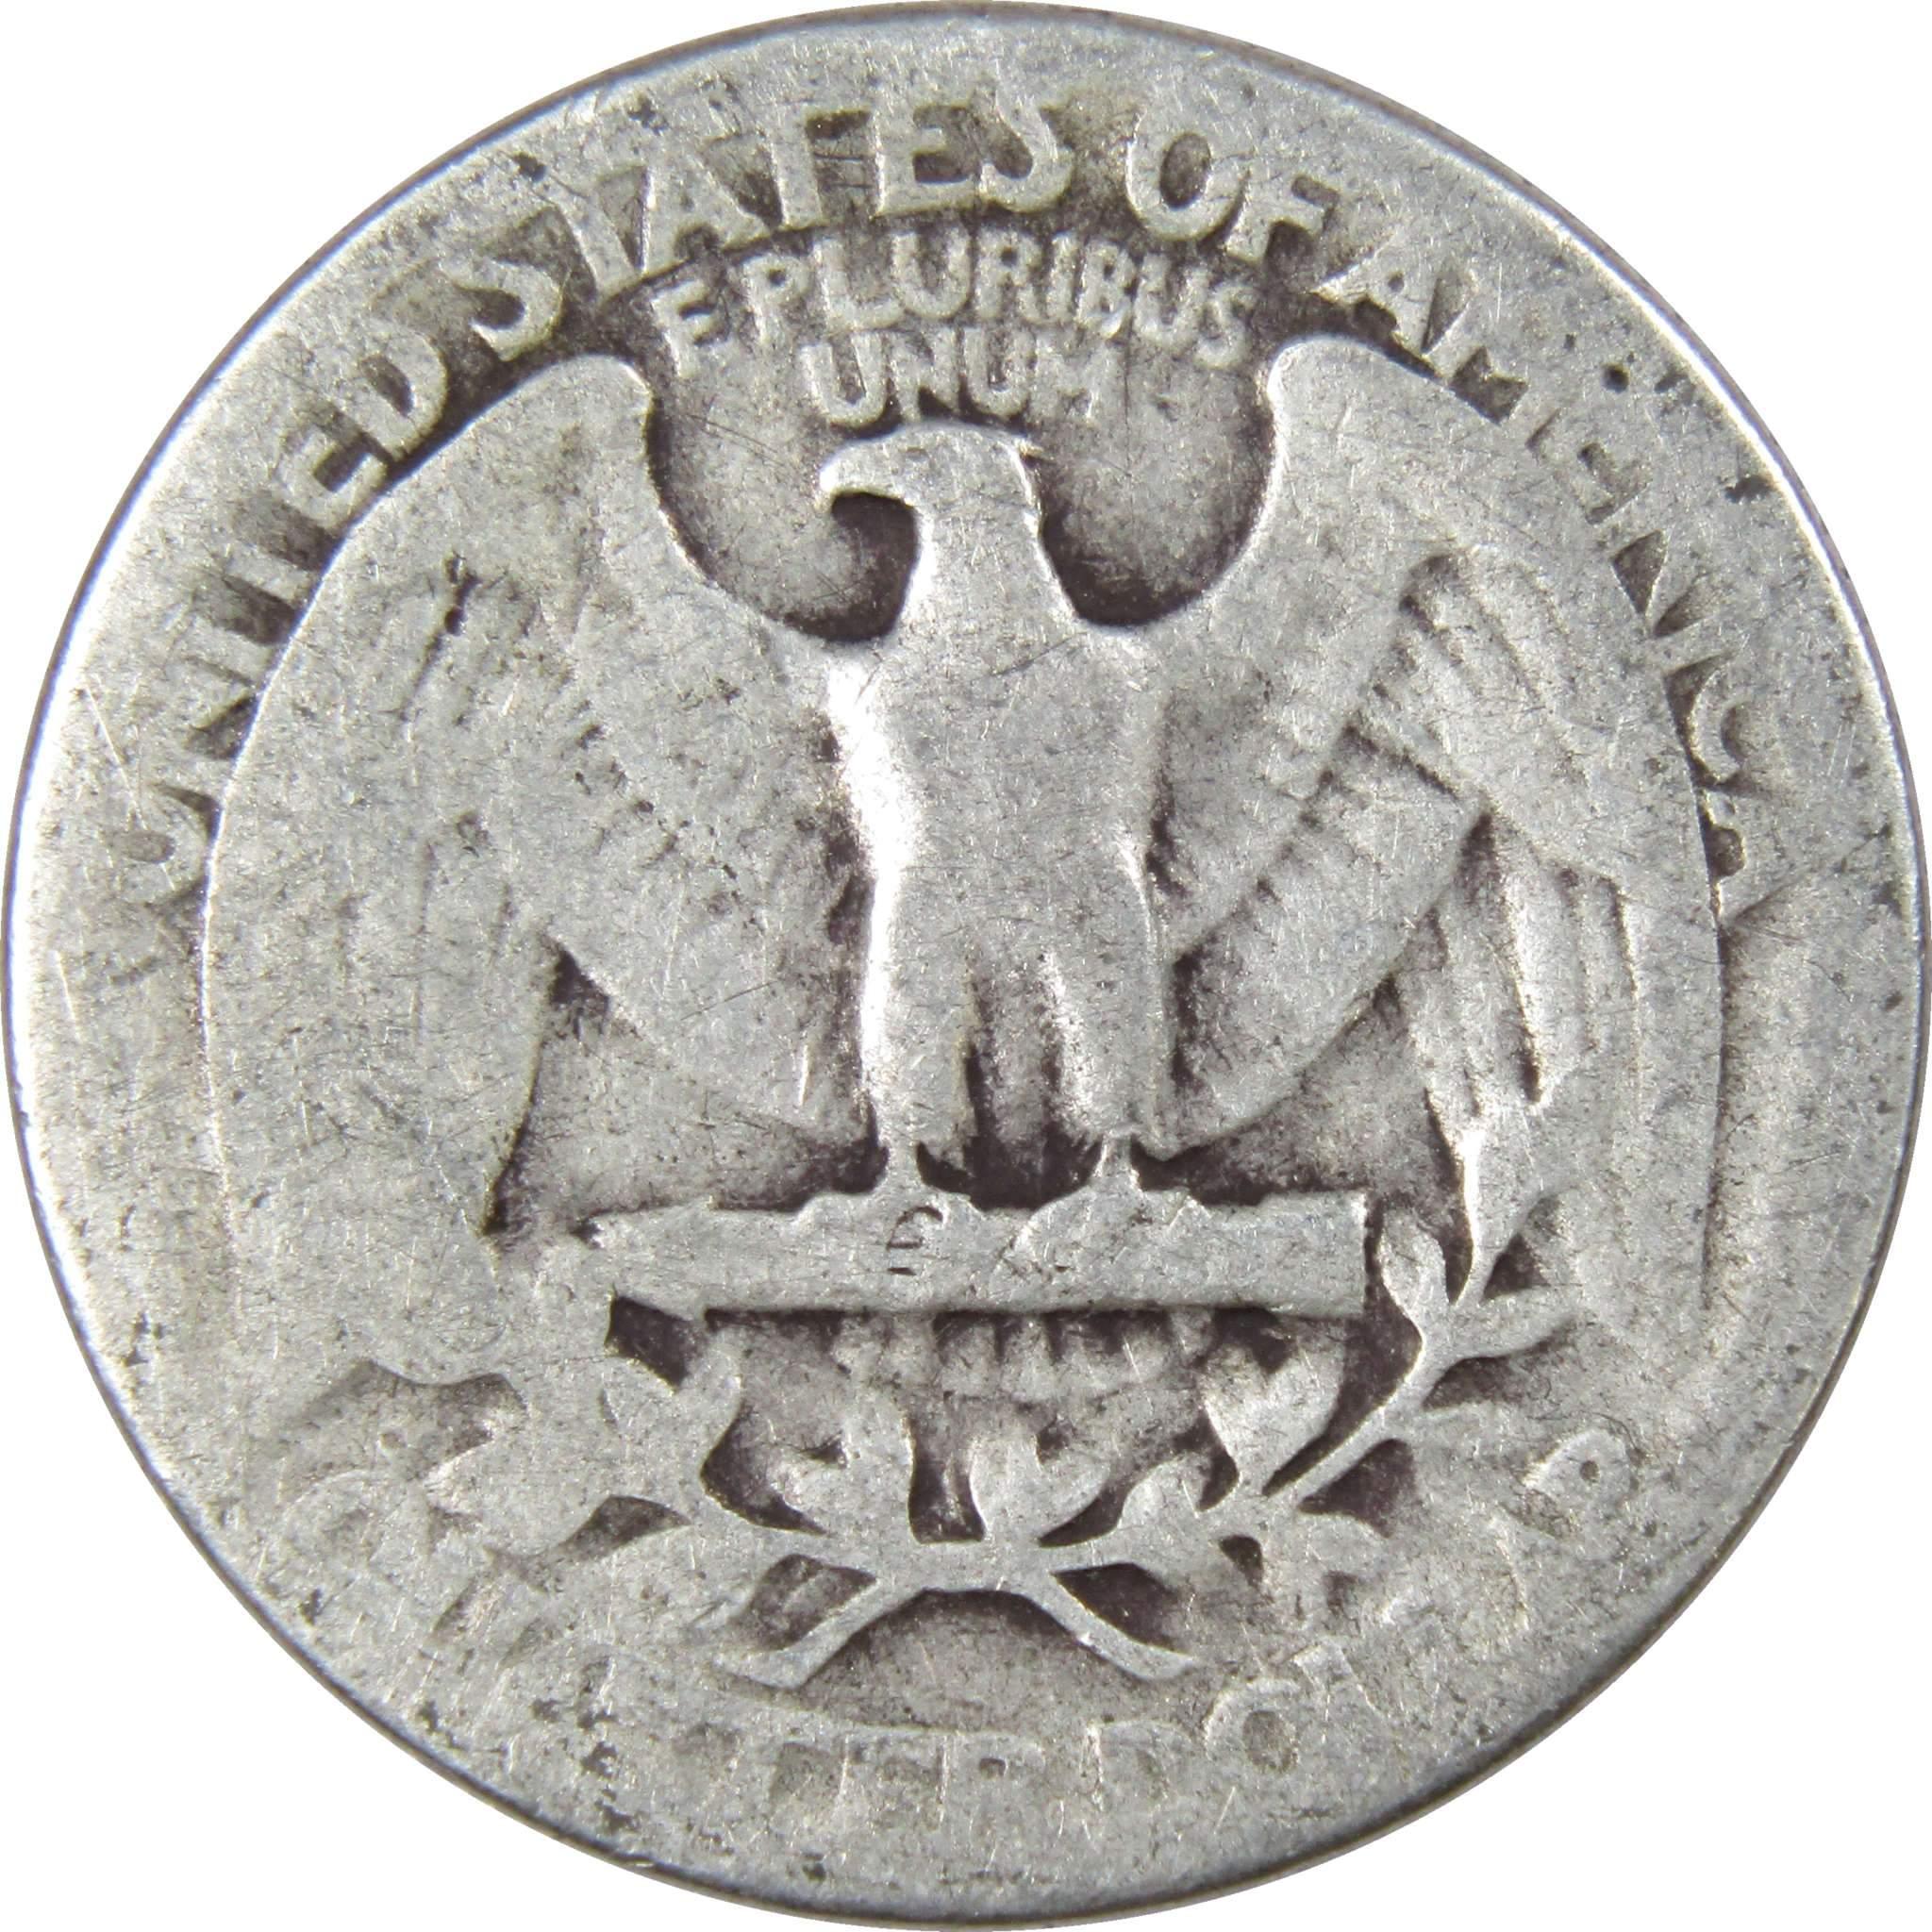 1938 Washington Quarter AG About Good 90% Silver 25c US Coin Collectible